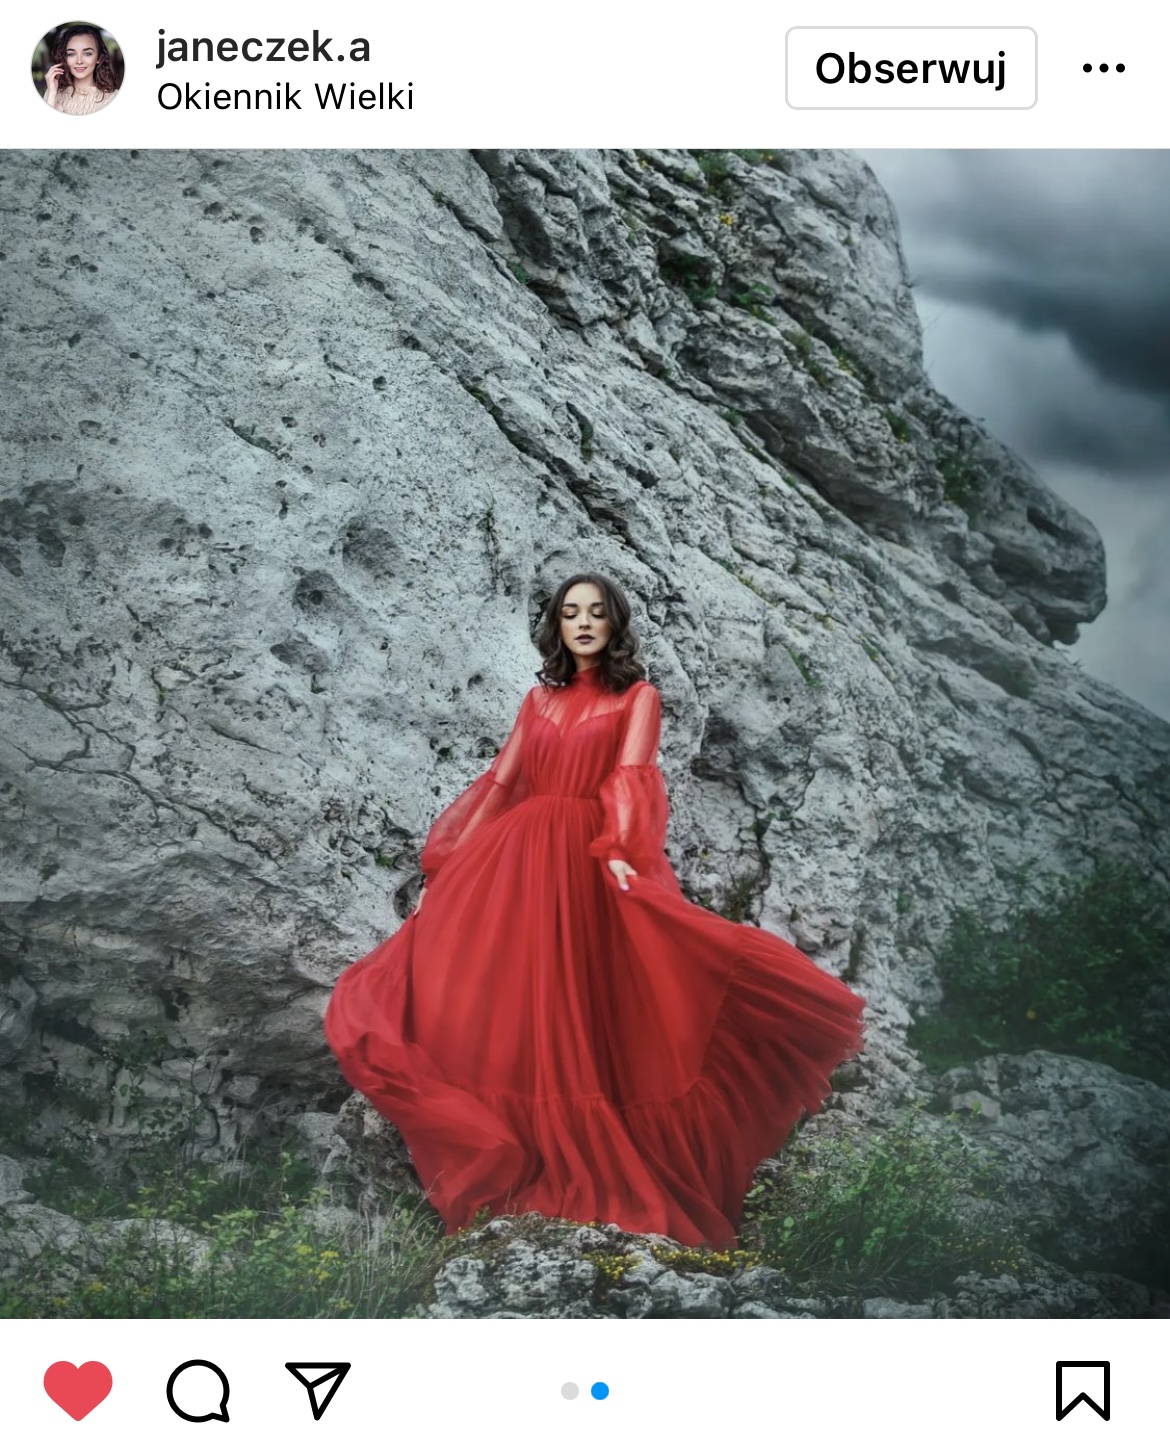 kobieta w balowej, czerwonej sukni na tle skały w tle czarne chmury